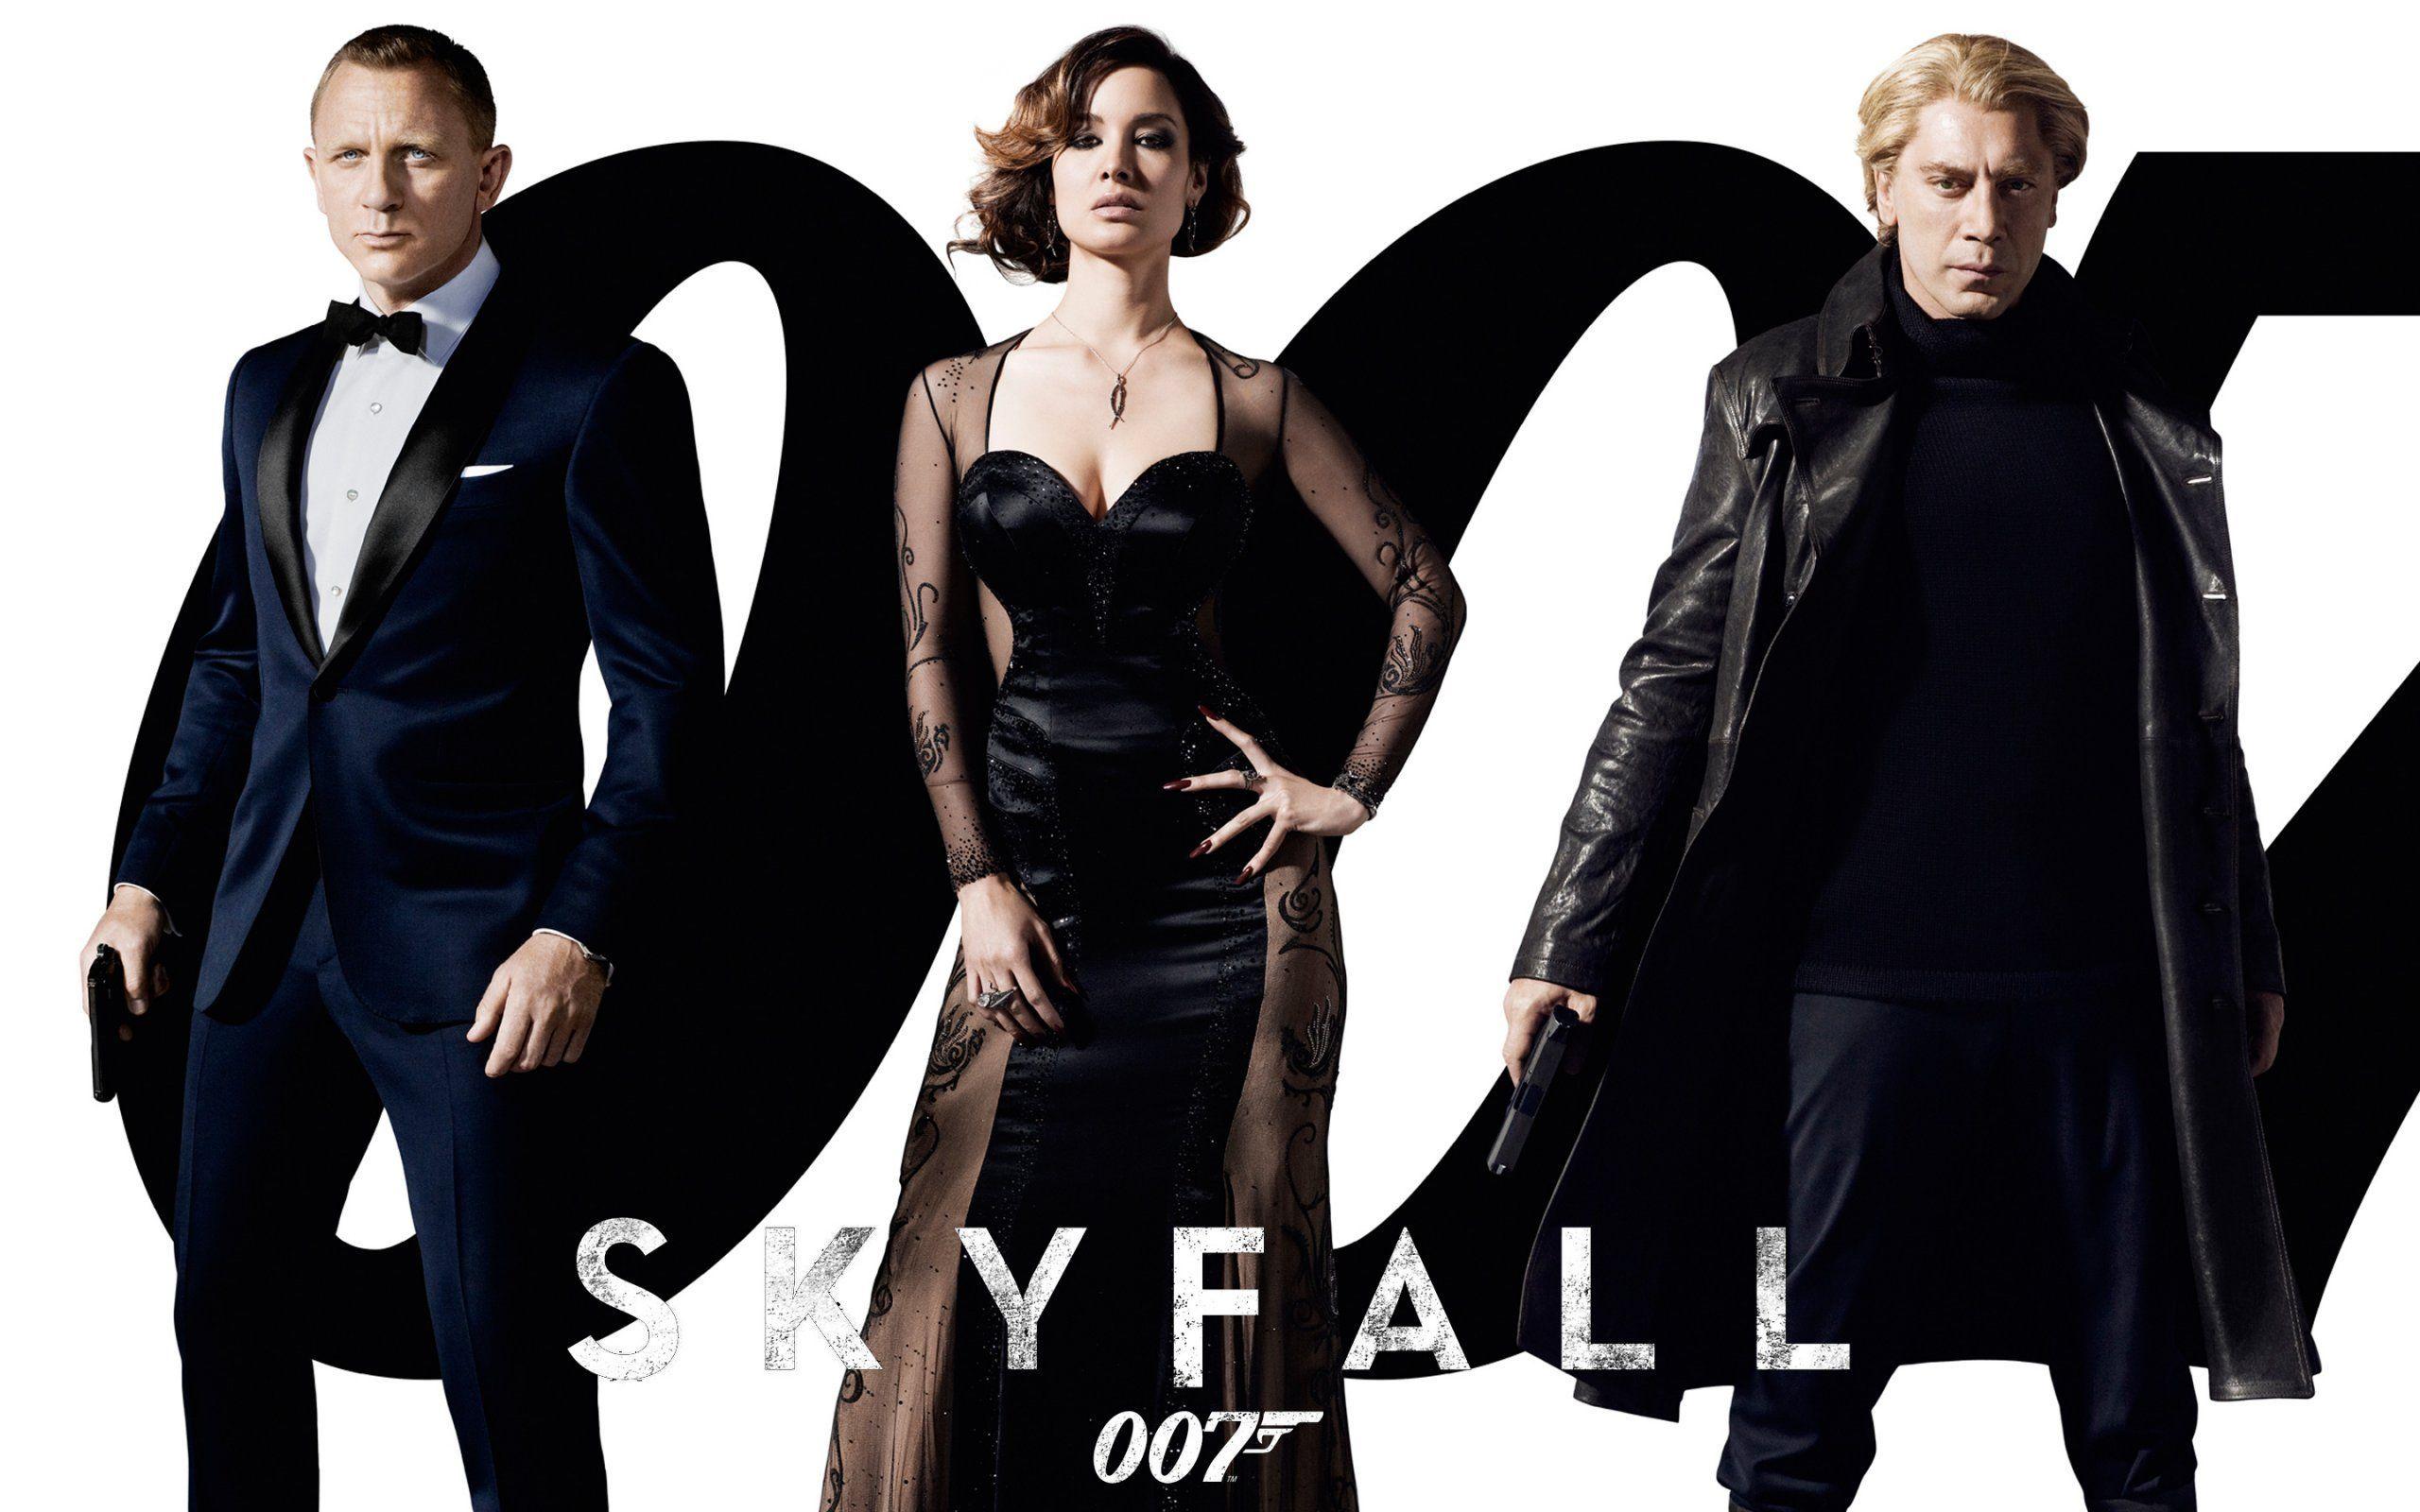 Skyfall 007. Wallpaper for PC